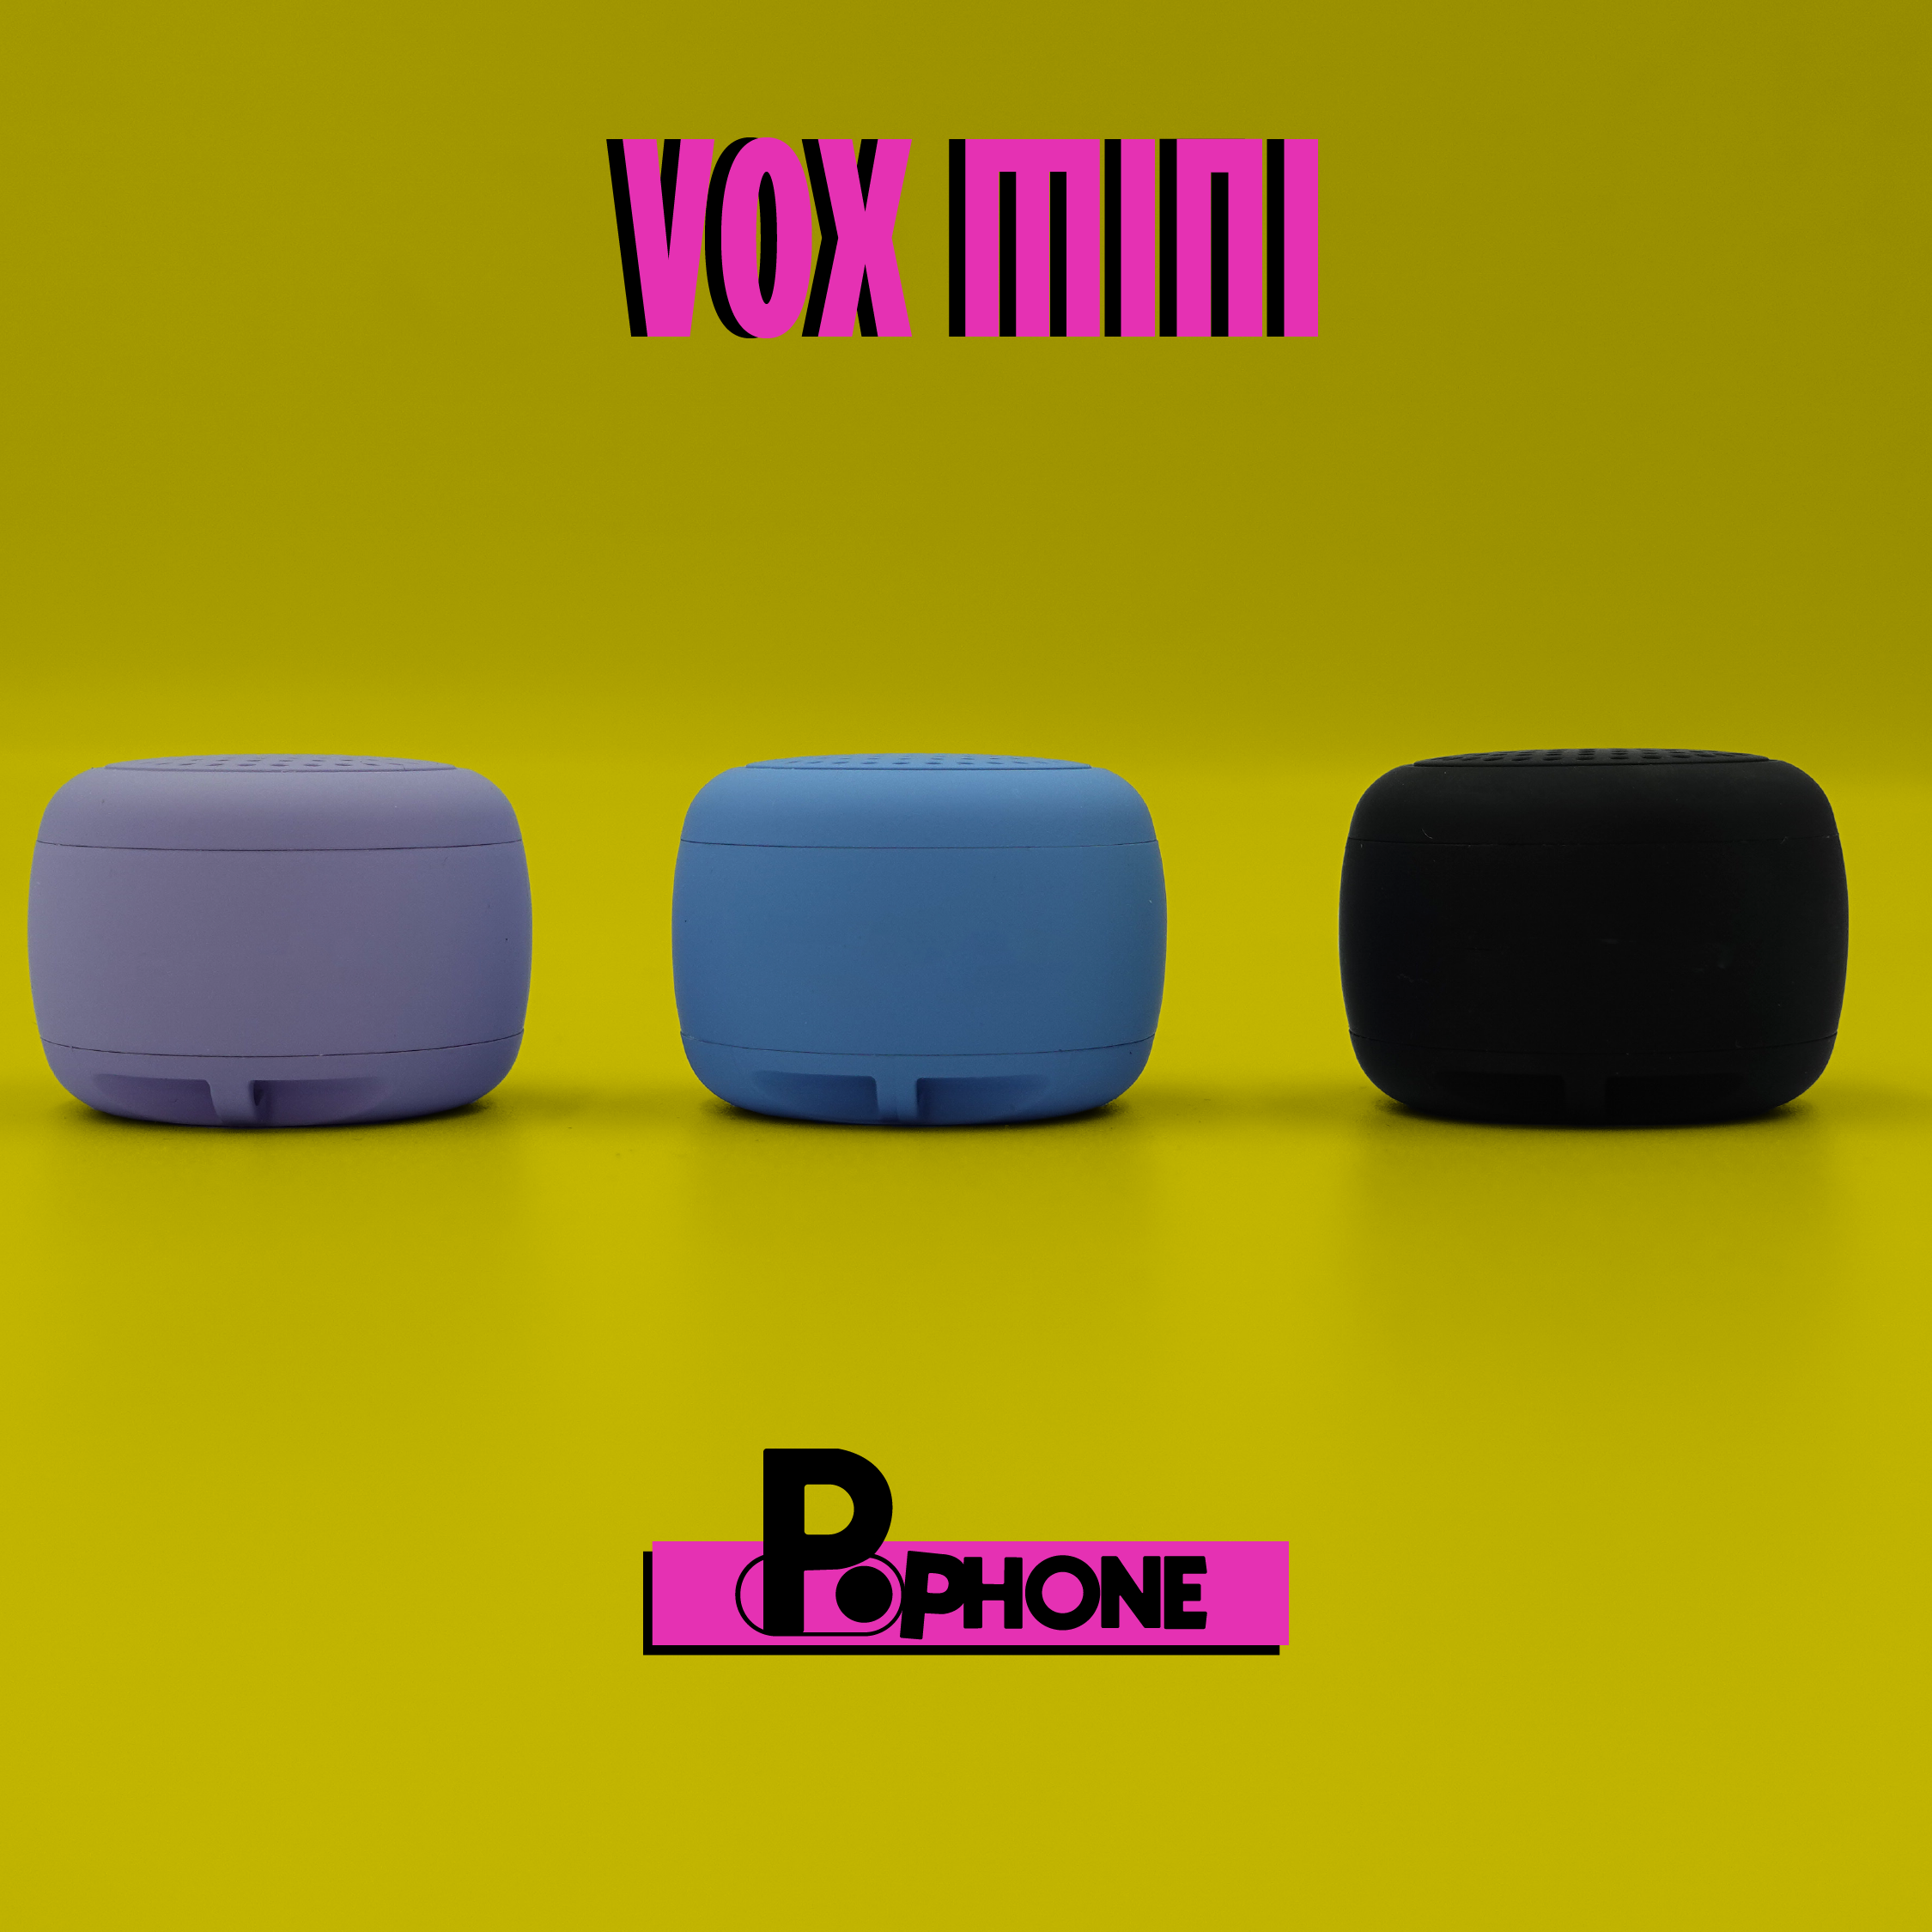 Vox mini